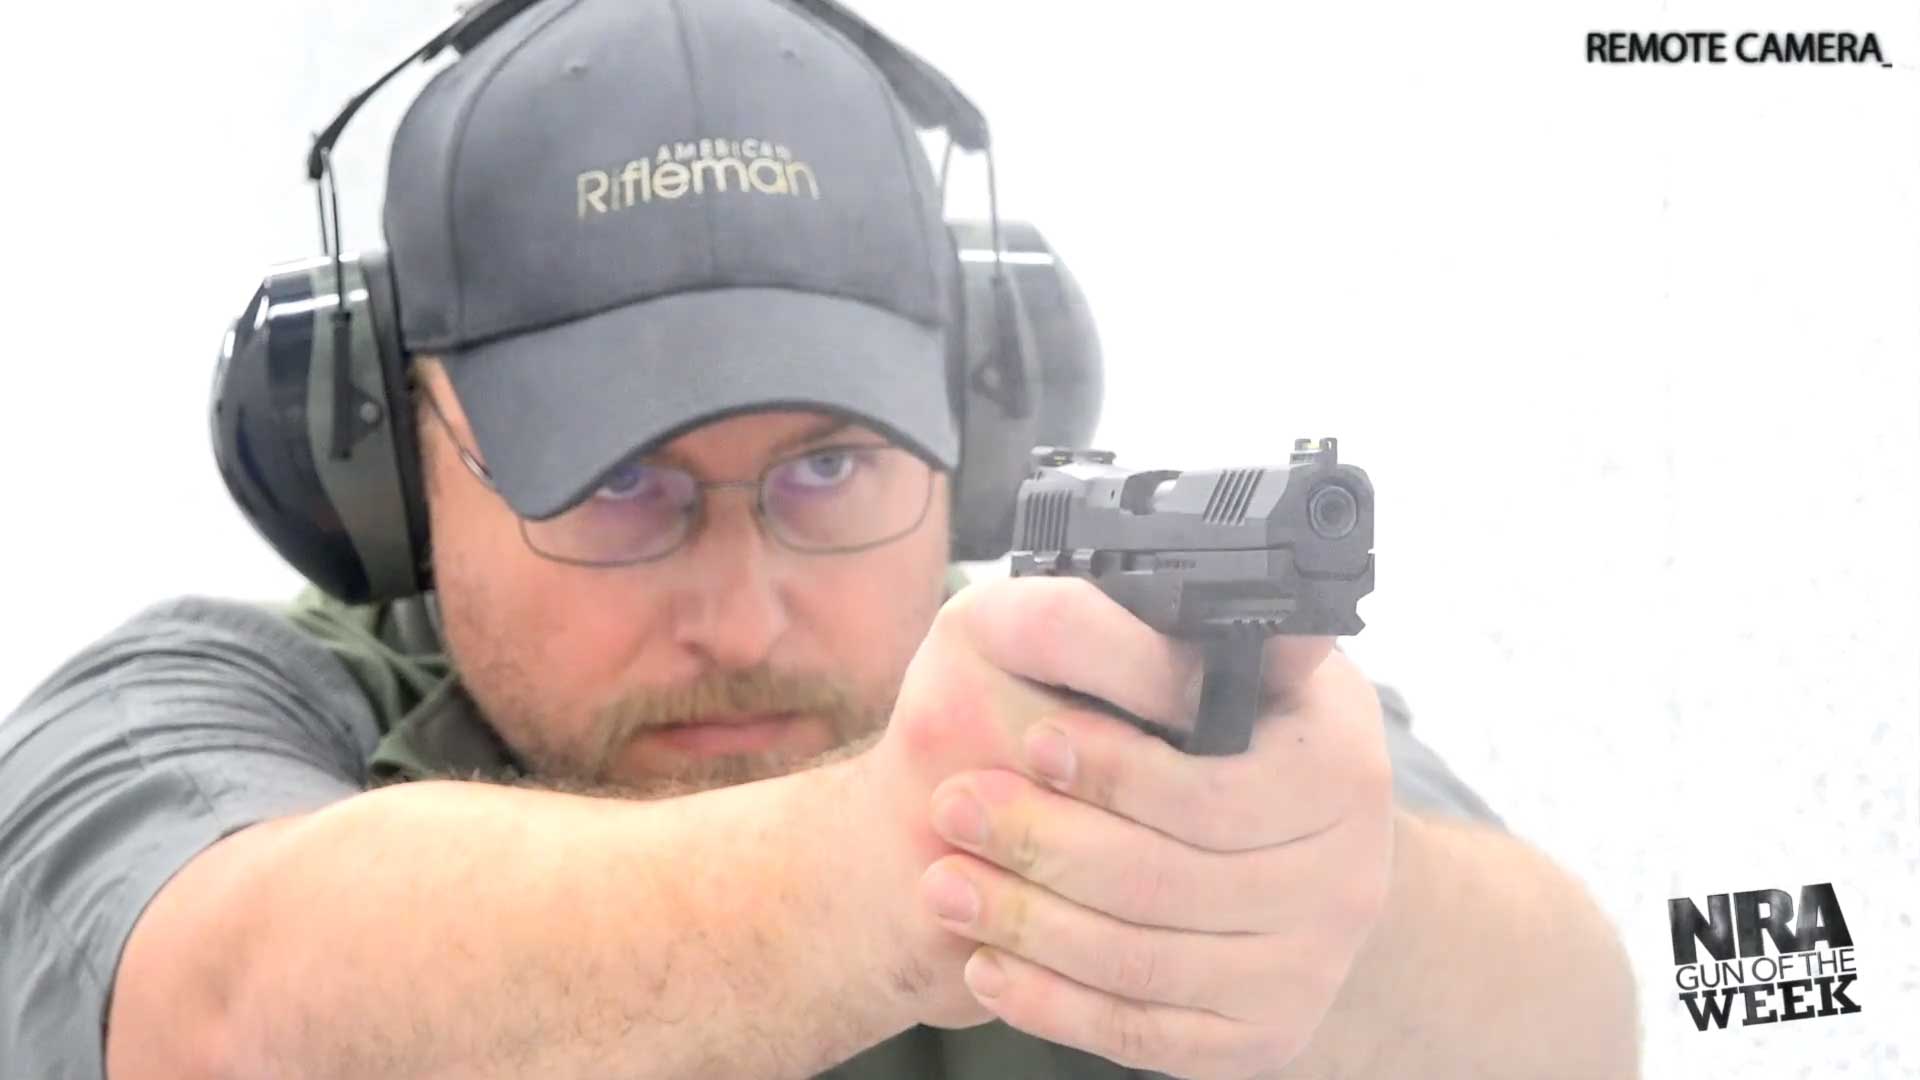 man wearing gray hat, shirt and earmuffs shooting gun pistol handgun black semi-automatic SIG SAUER P322 gun smoke remote camera shooting range